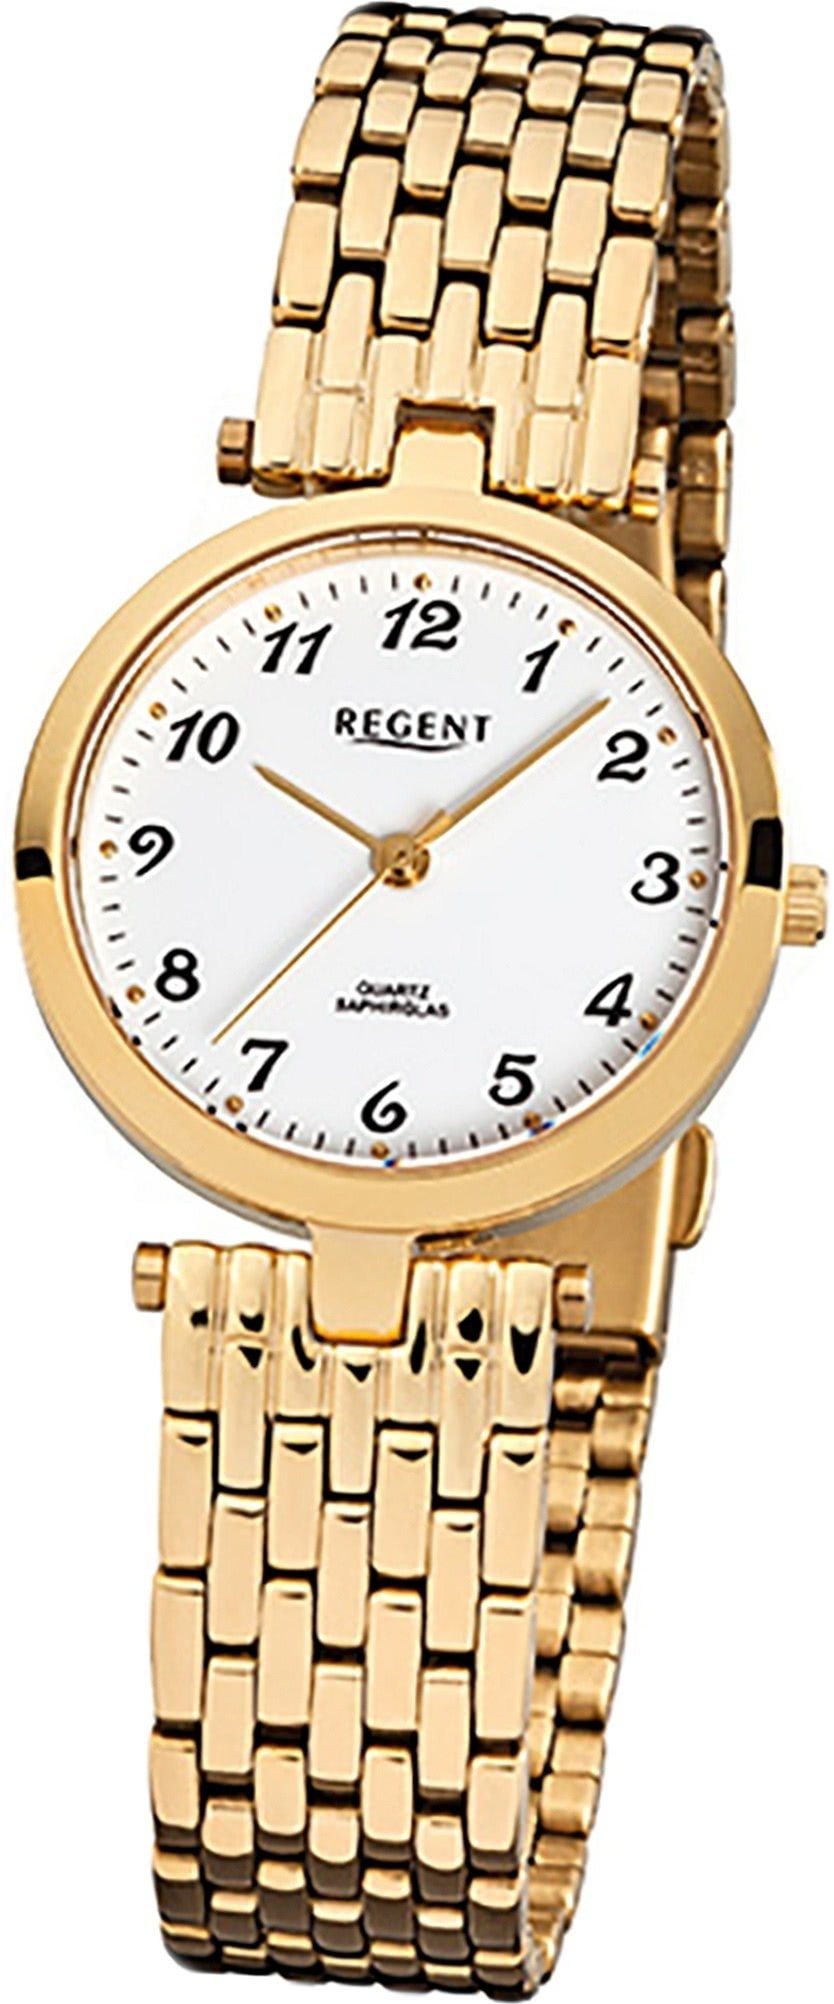 Regent Quarzuhr Regent Stahl Damen Uhr F-905 Quarzuhr, Damenuhr mit Edelstahlarmband, rundes Gehäuse, klein (ca. 28mm), Elega